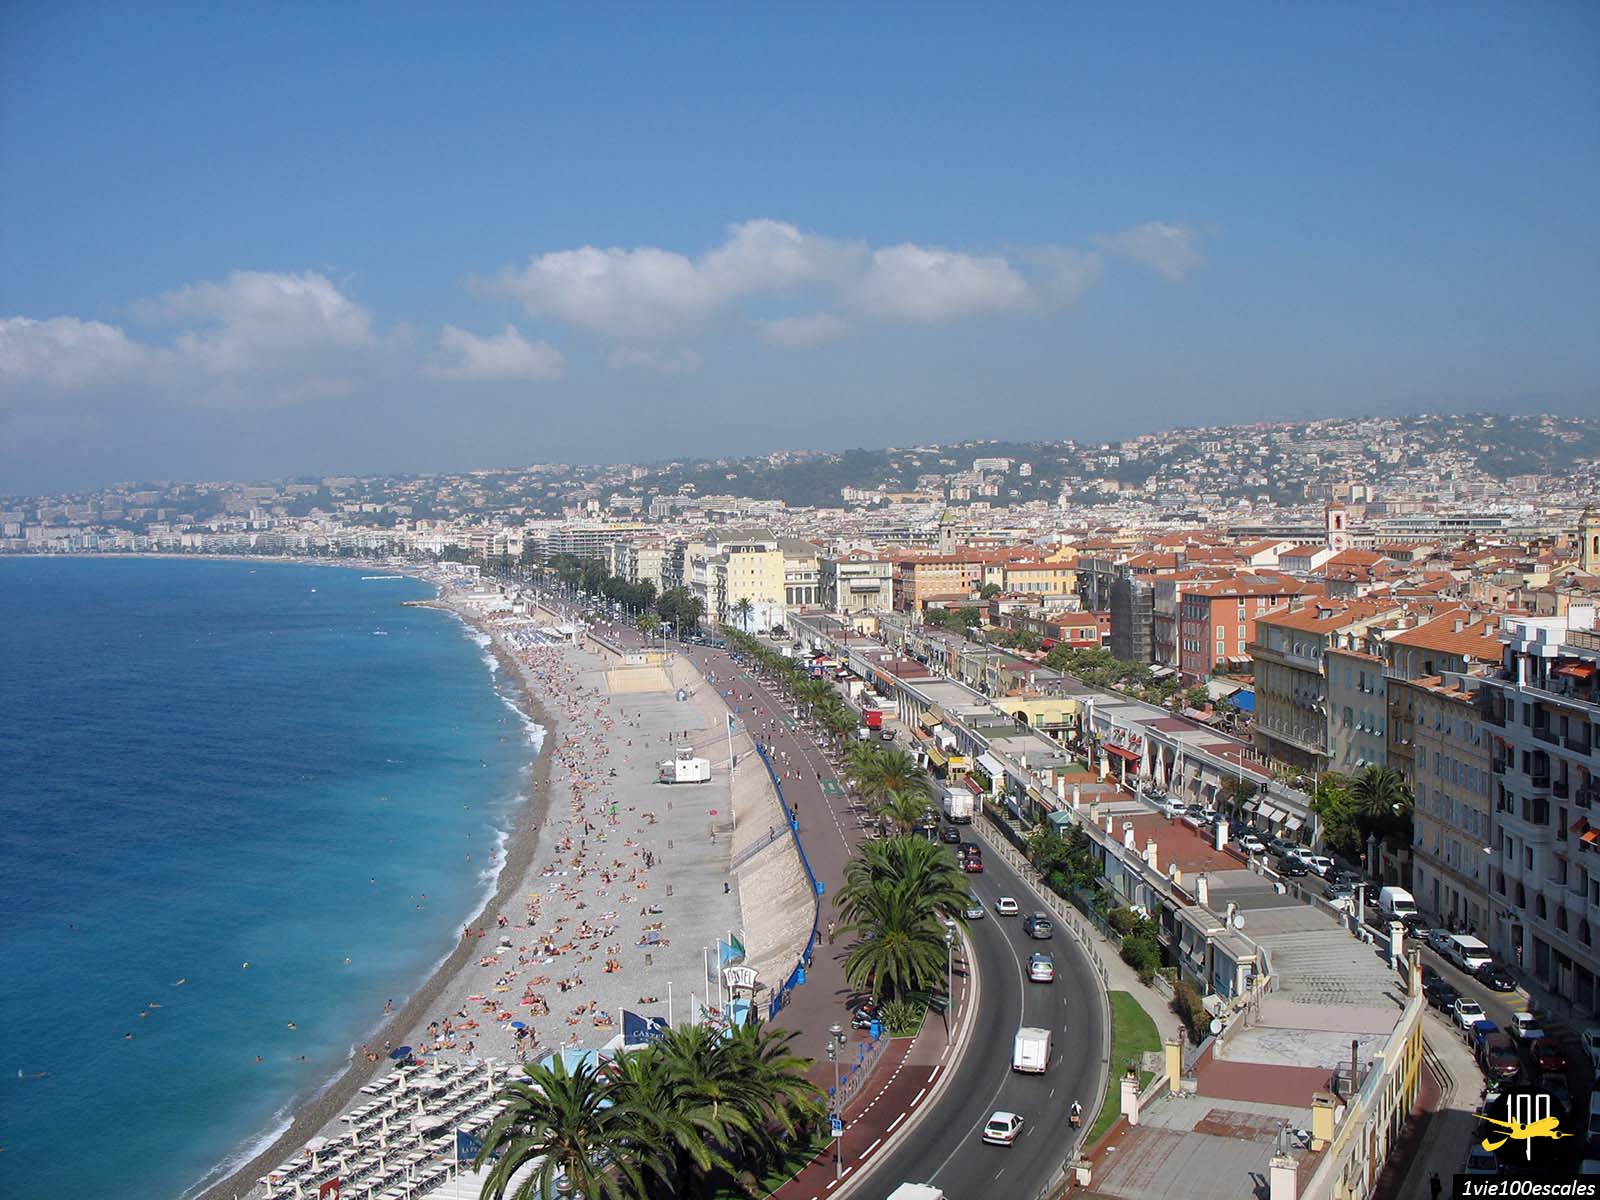 La vue sur la belle promenade des anglais au bord de mer depuis la colline du château de Nice